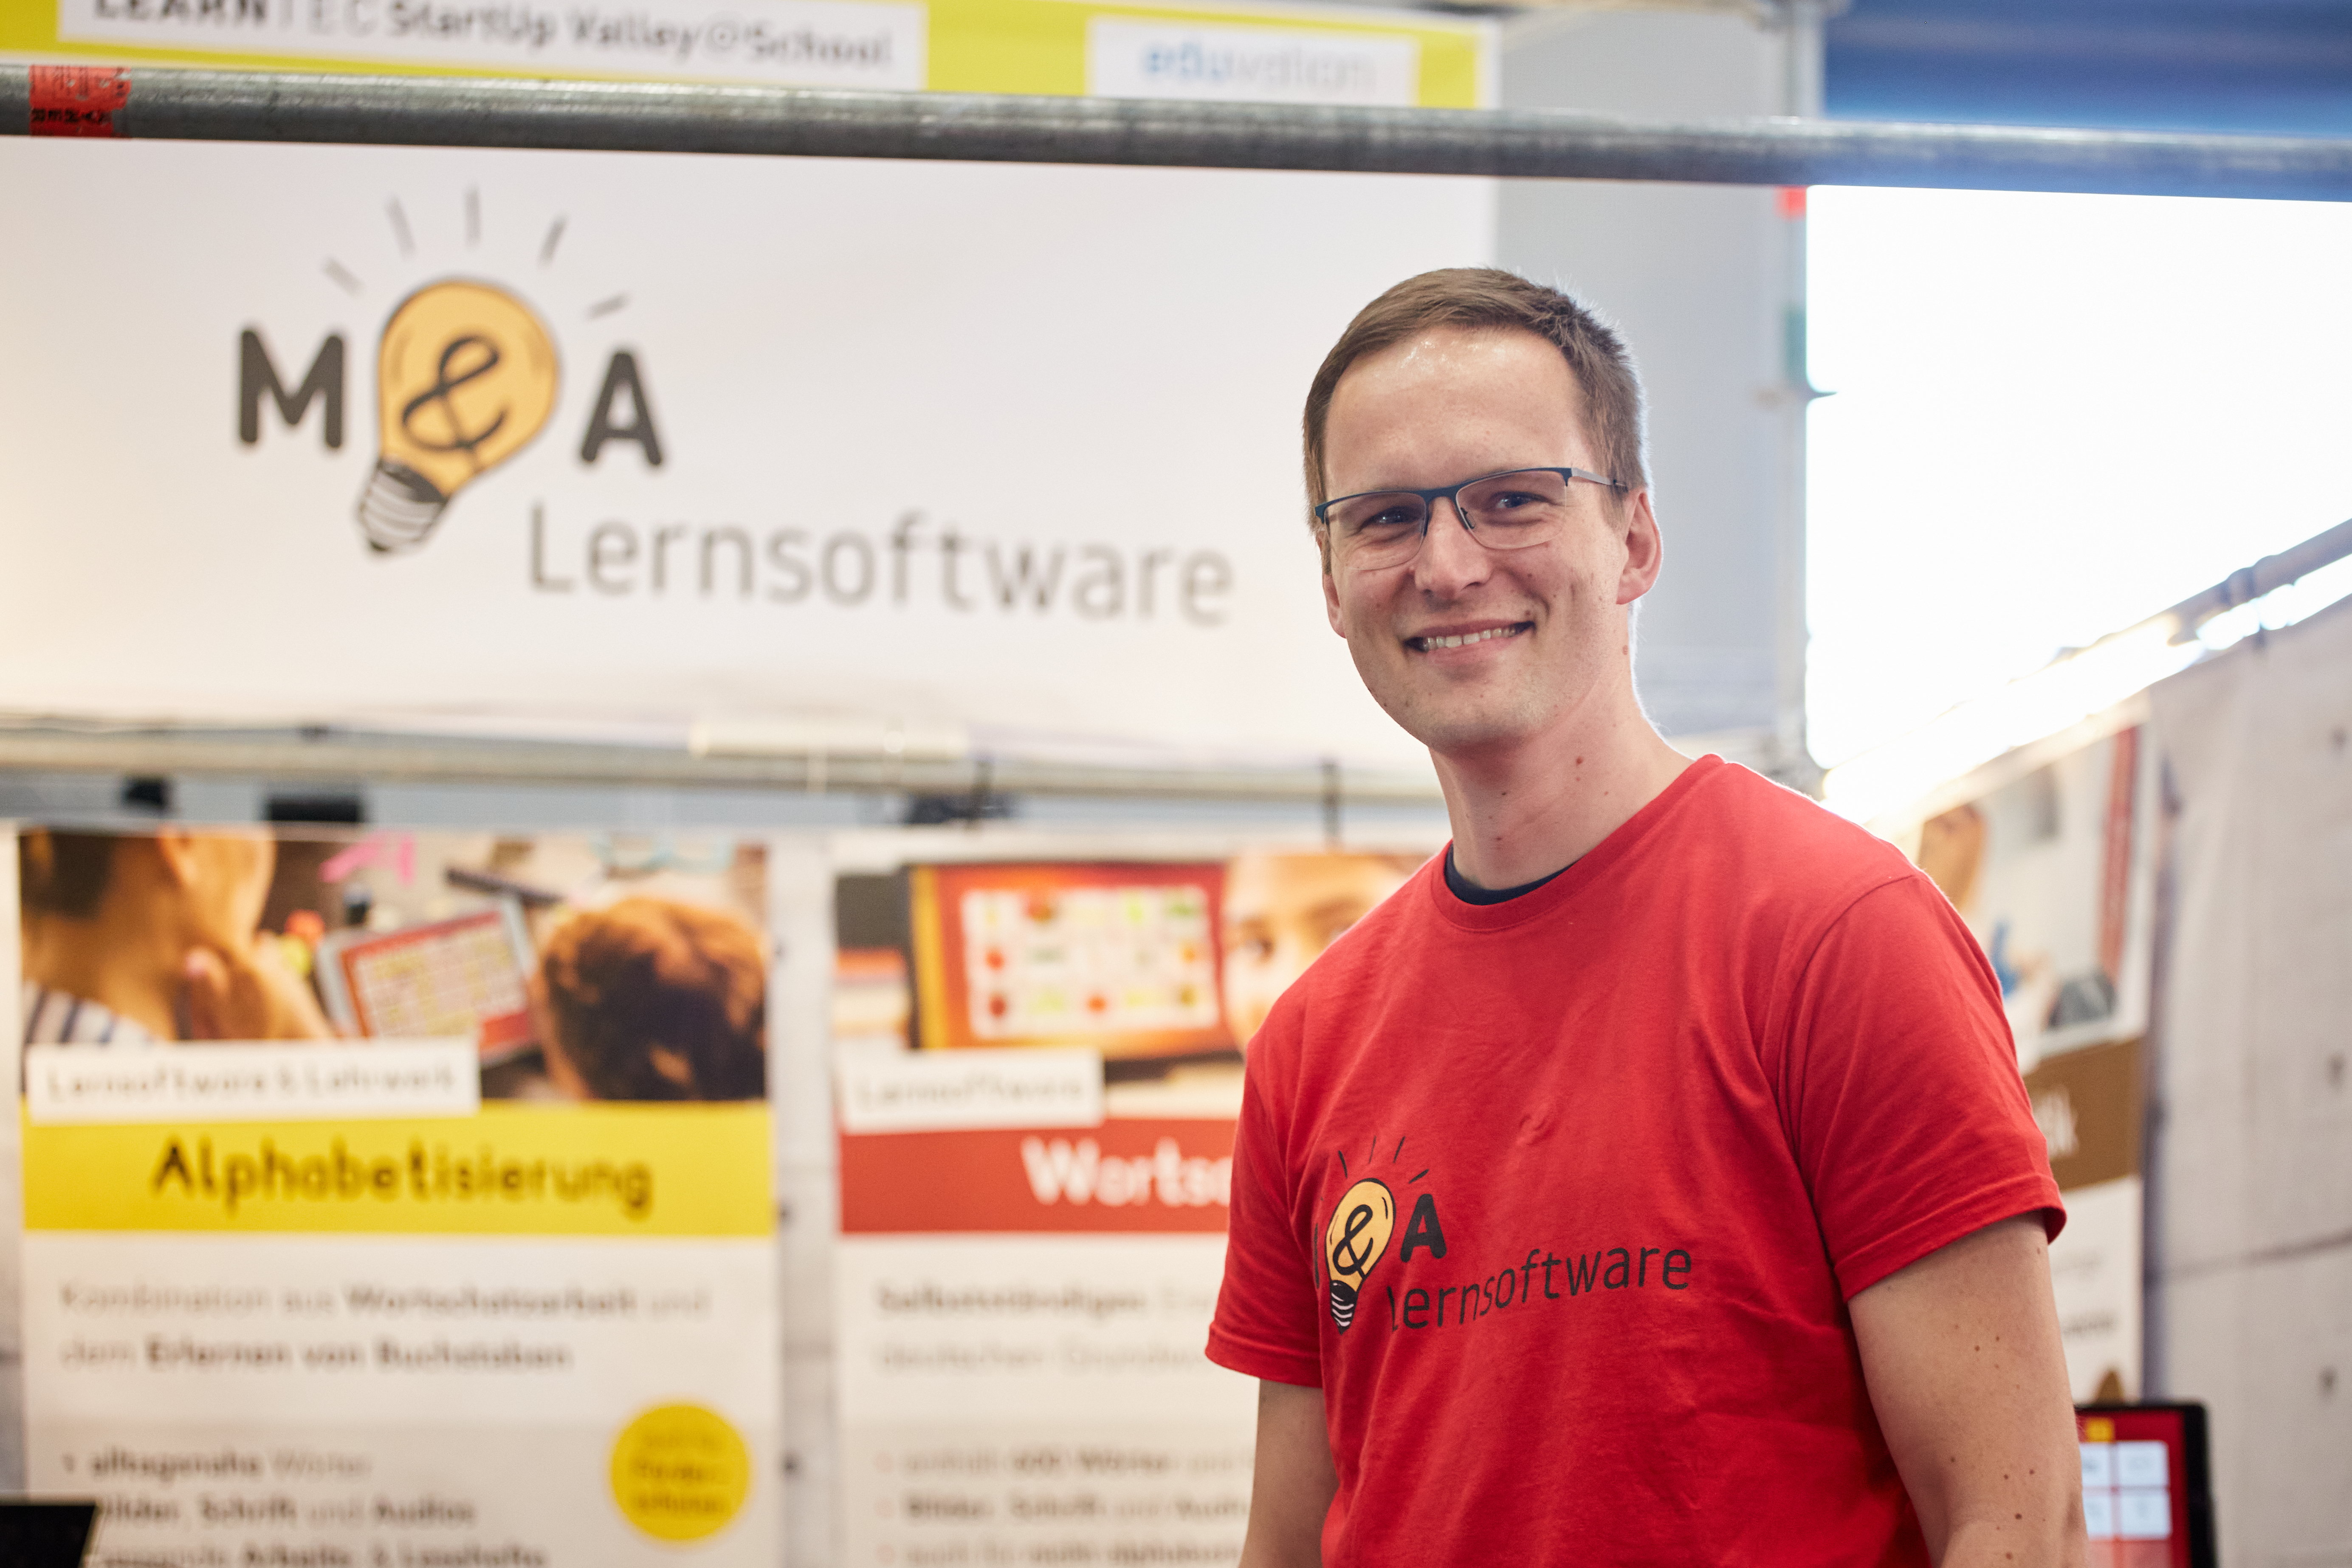  Matthias Geenen, founder of M&A Lernsoftware 